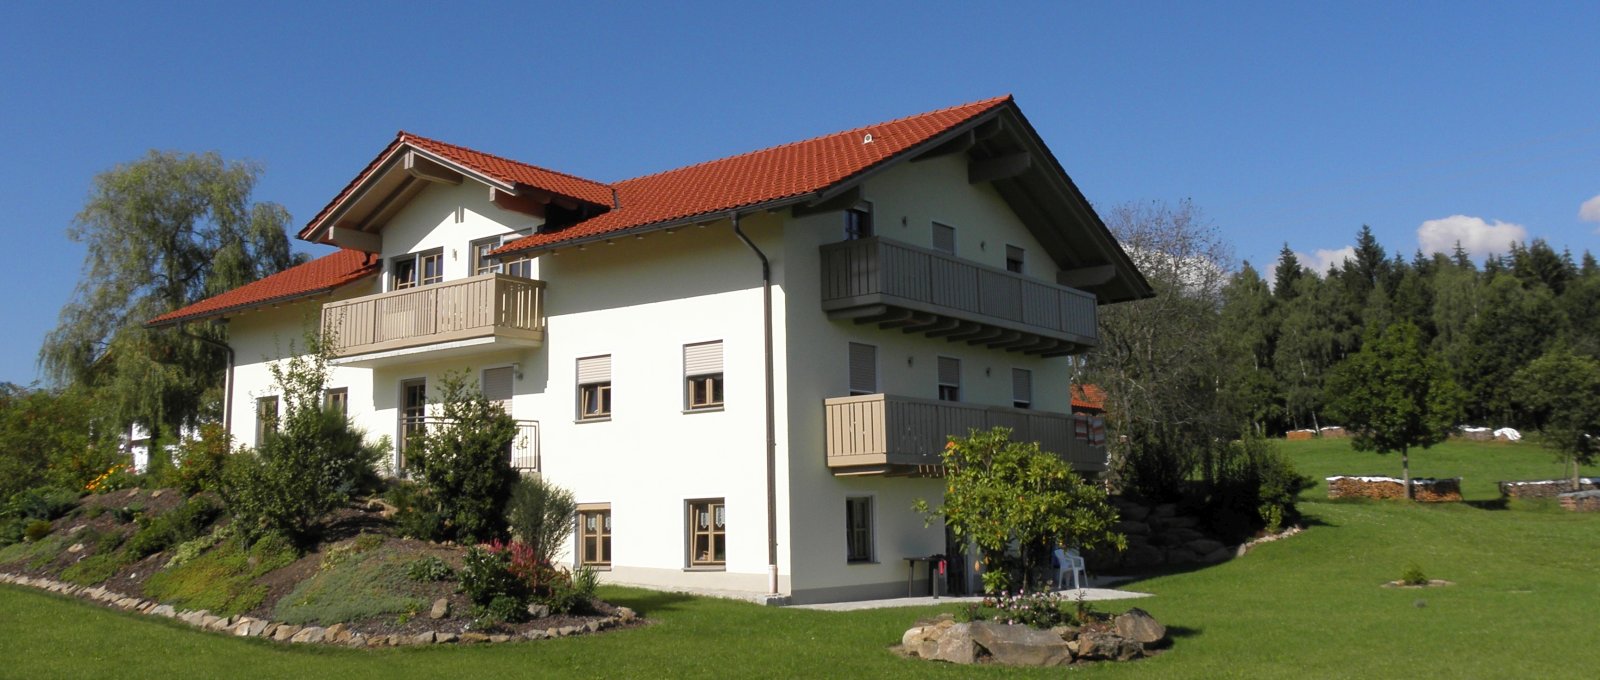 Ferienhaus für 12 Personen am Bauernhof Kopp Teisnach